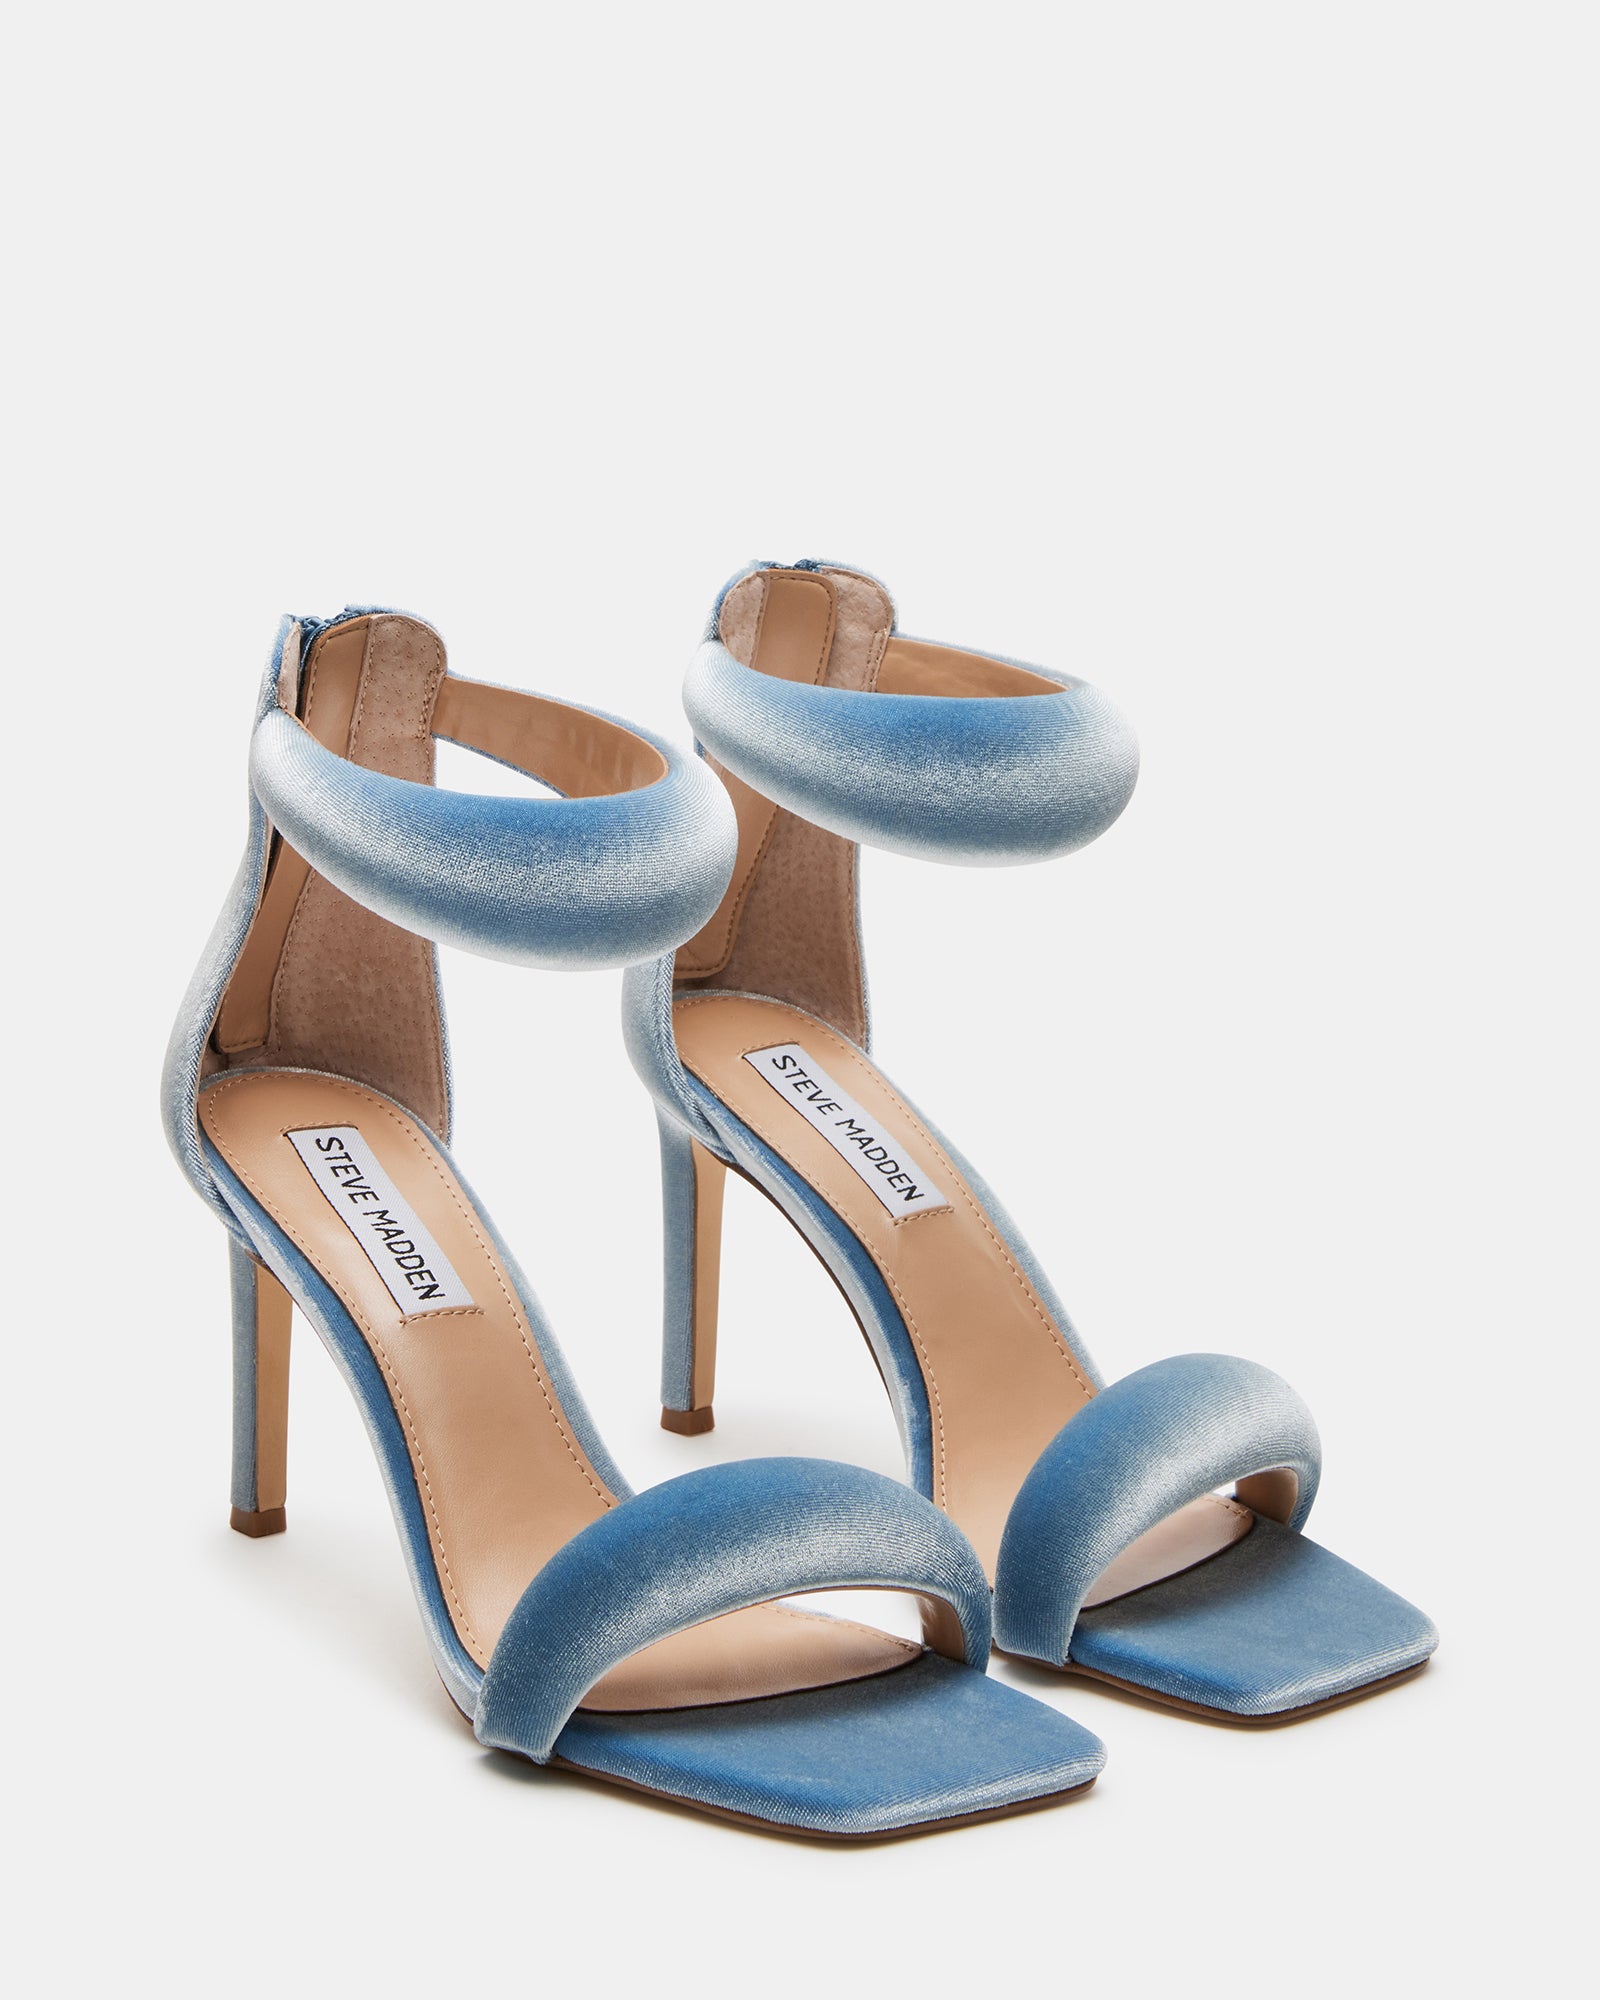 PARTAY Velvet Light Blue Square Toe Heel | Women's Heels – Steve Madden